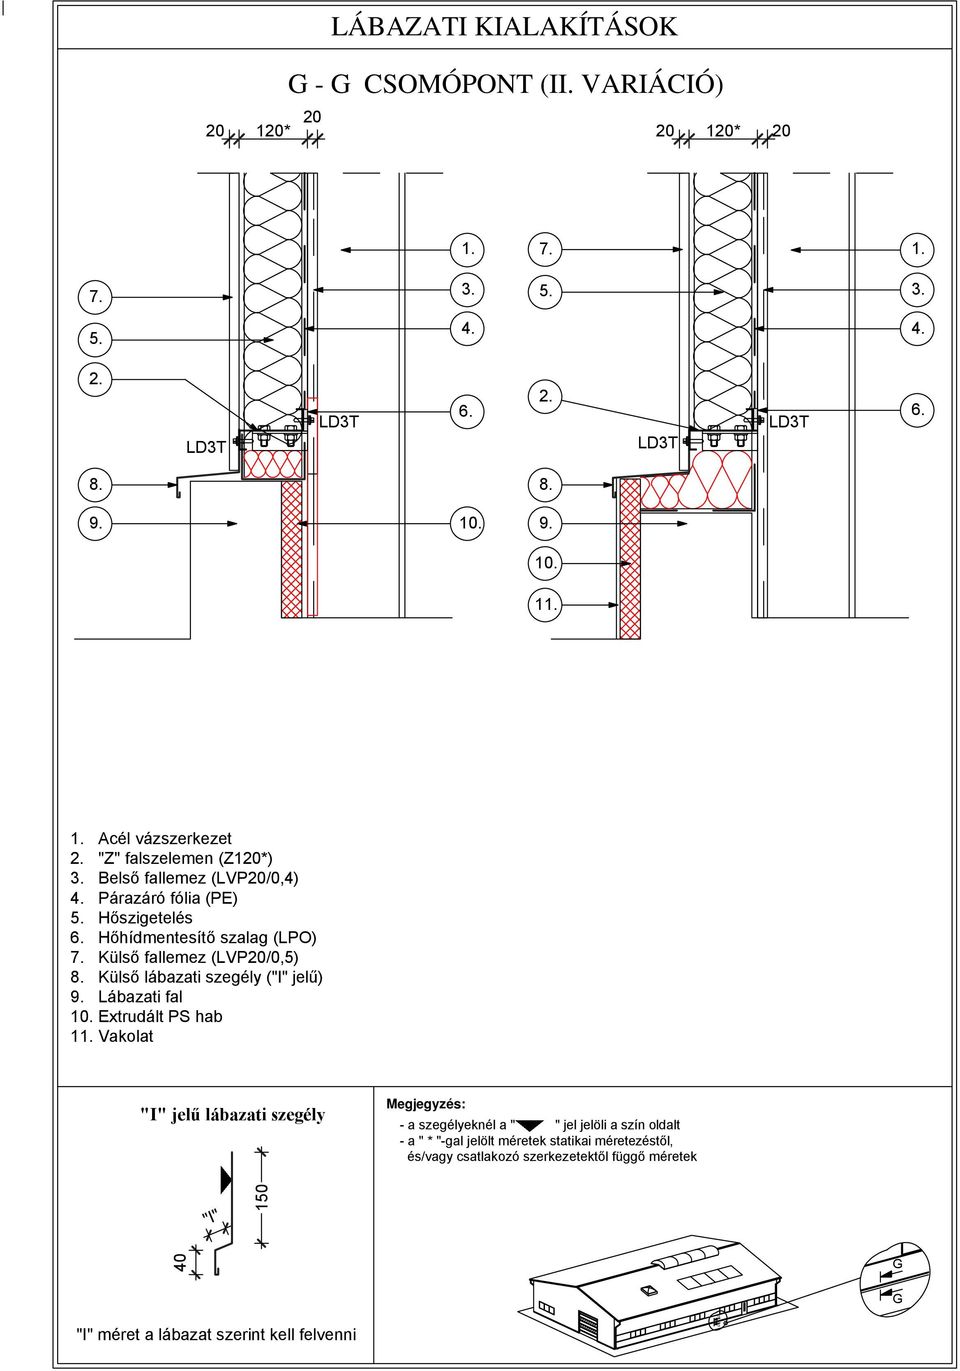 Hőhídmentesítő szalag (LPO) Külső fallemez (LVP20/0,5) Külső lábazati szegély ("I" jelű) Lábazati fal 10.